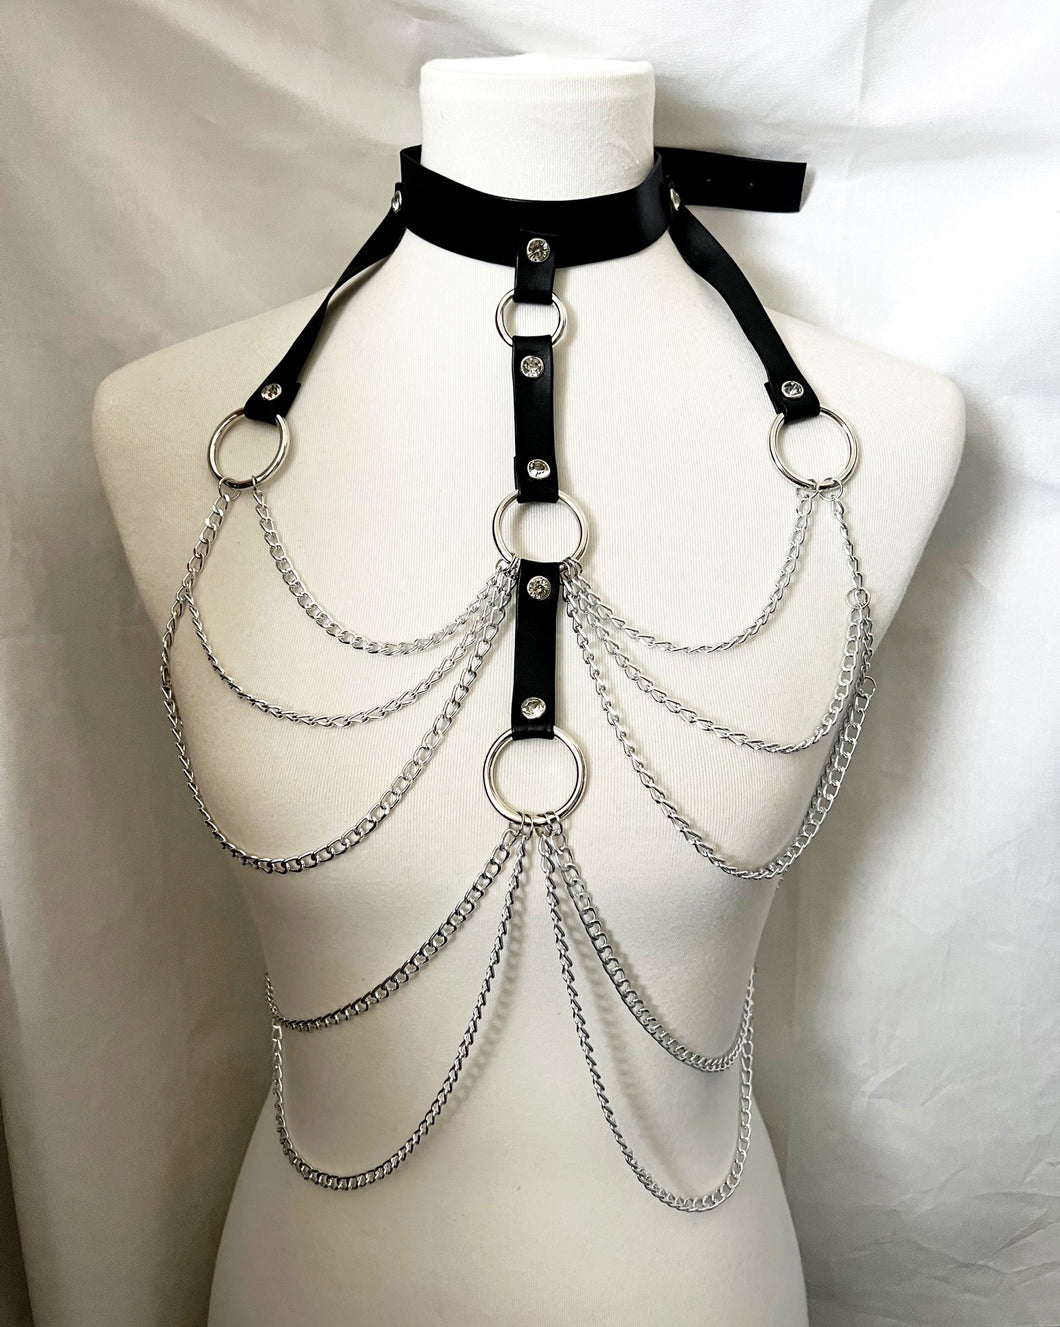 Mistress Chain Harness Bra